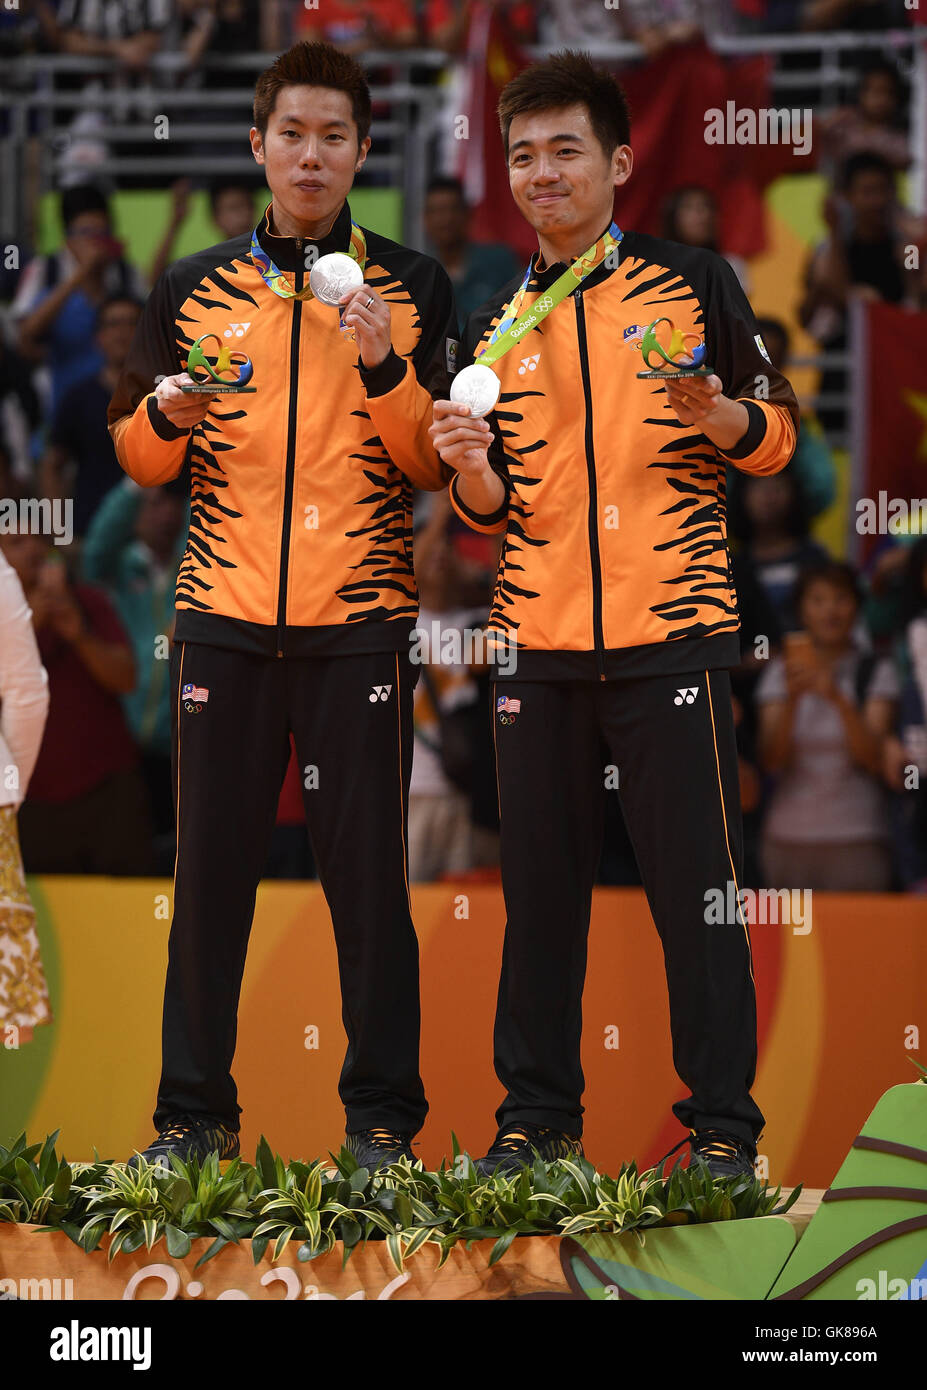 V shem olympic goh Malaysian athletes